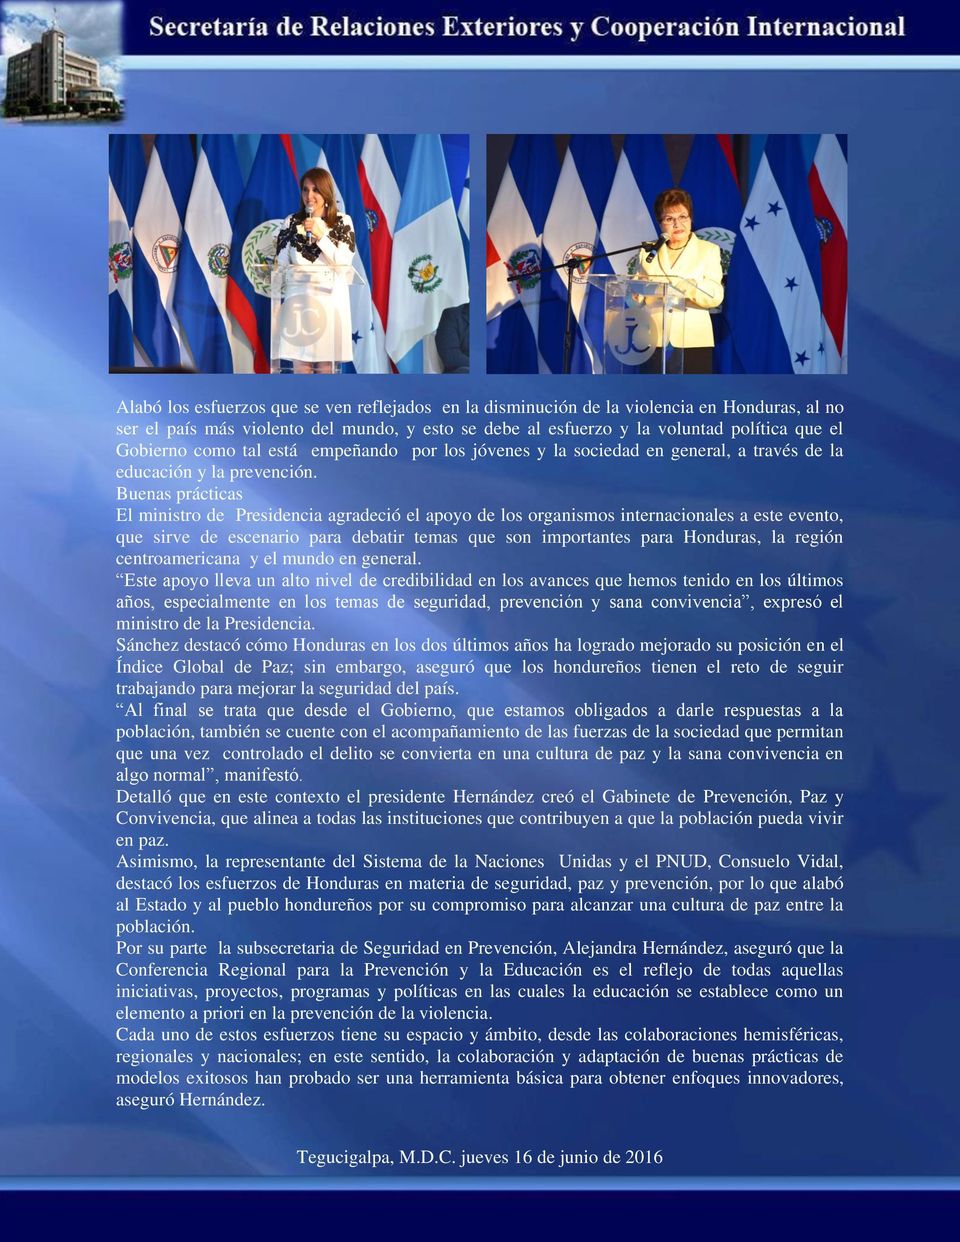 Buenas prácticas El ministro de Presidencia agradeció el apoyo de los organismos internacionales a este evento, que sirve de escenario para debatir temas que son importantes para Honduras, la región